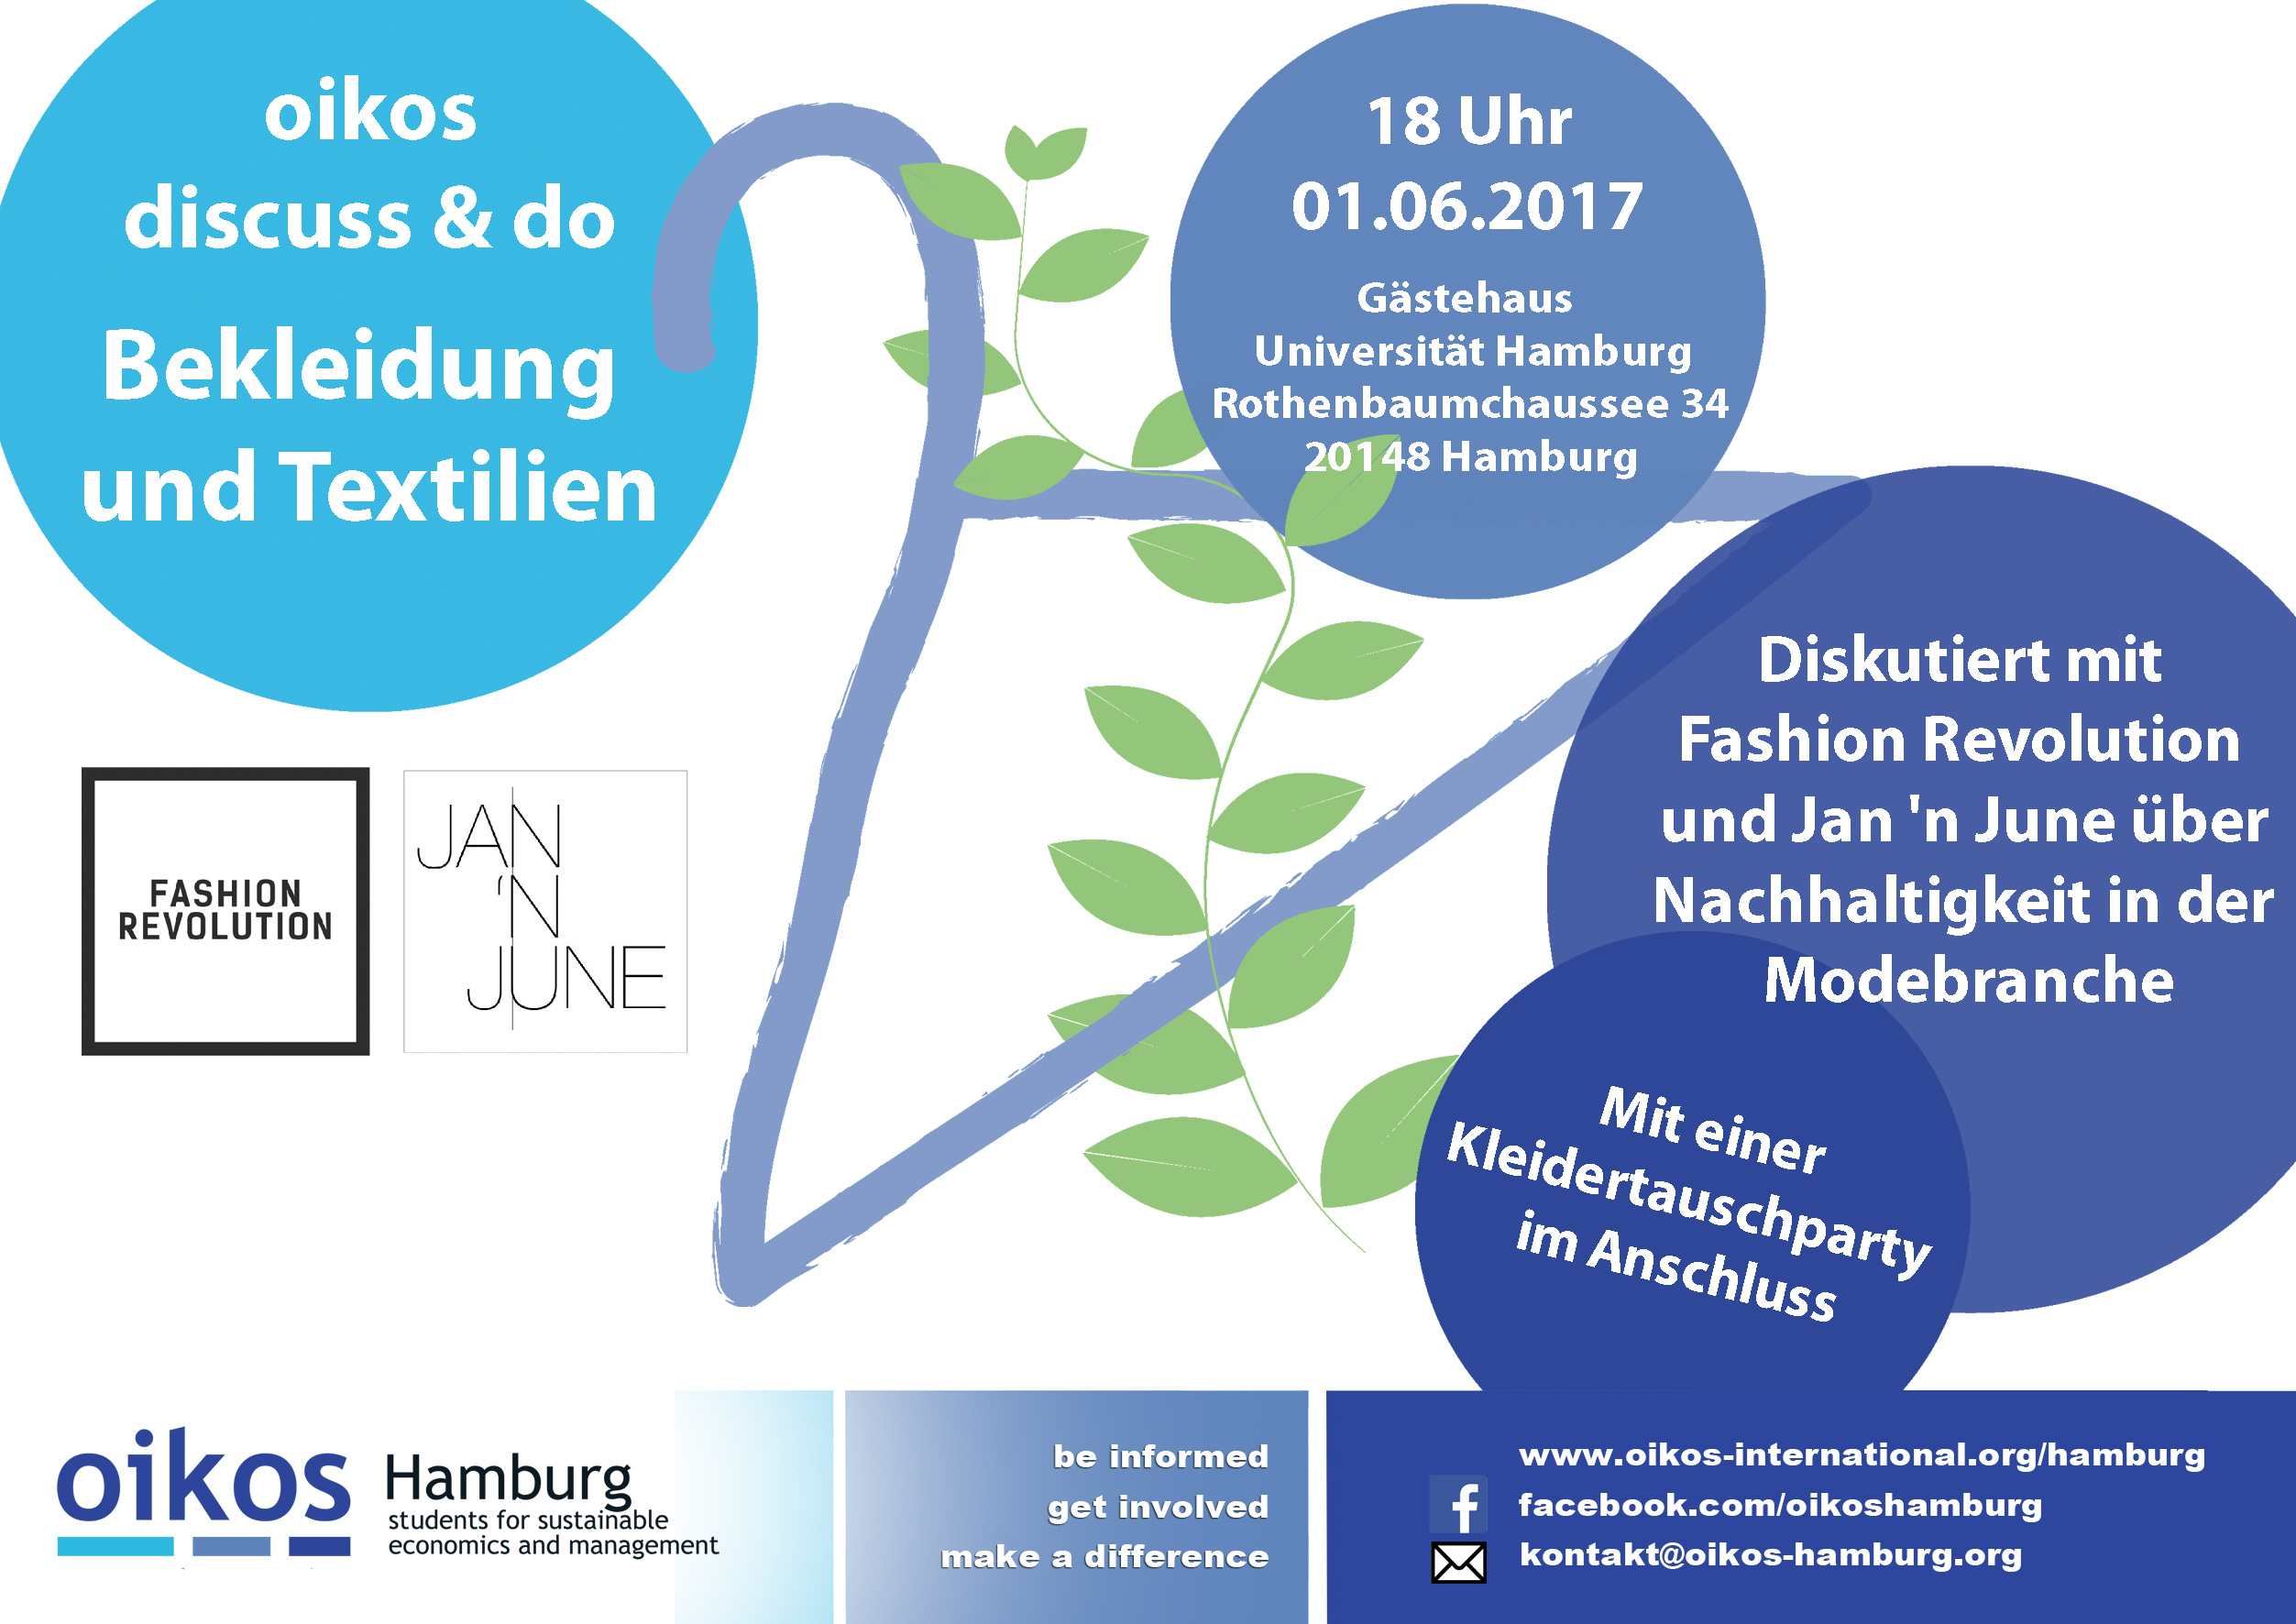 Flyer oikos discuss & do: Bekleidung und Textilien